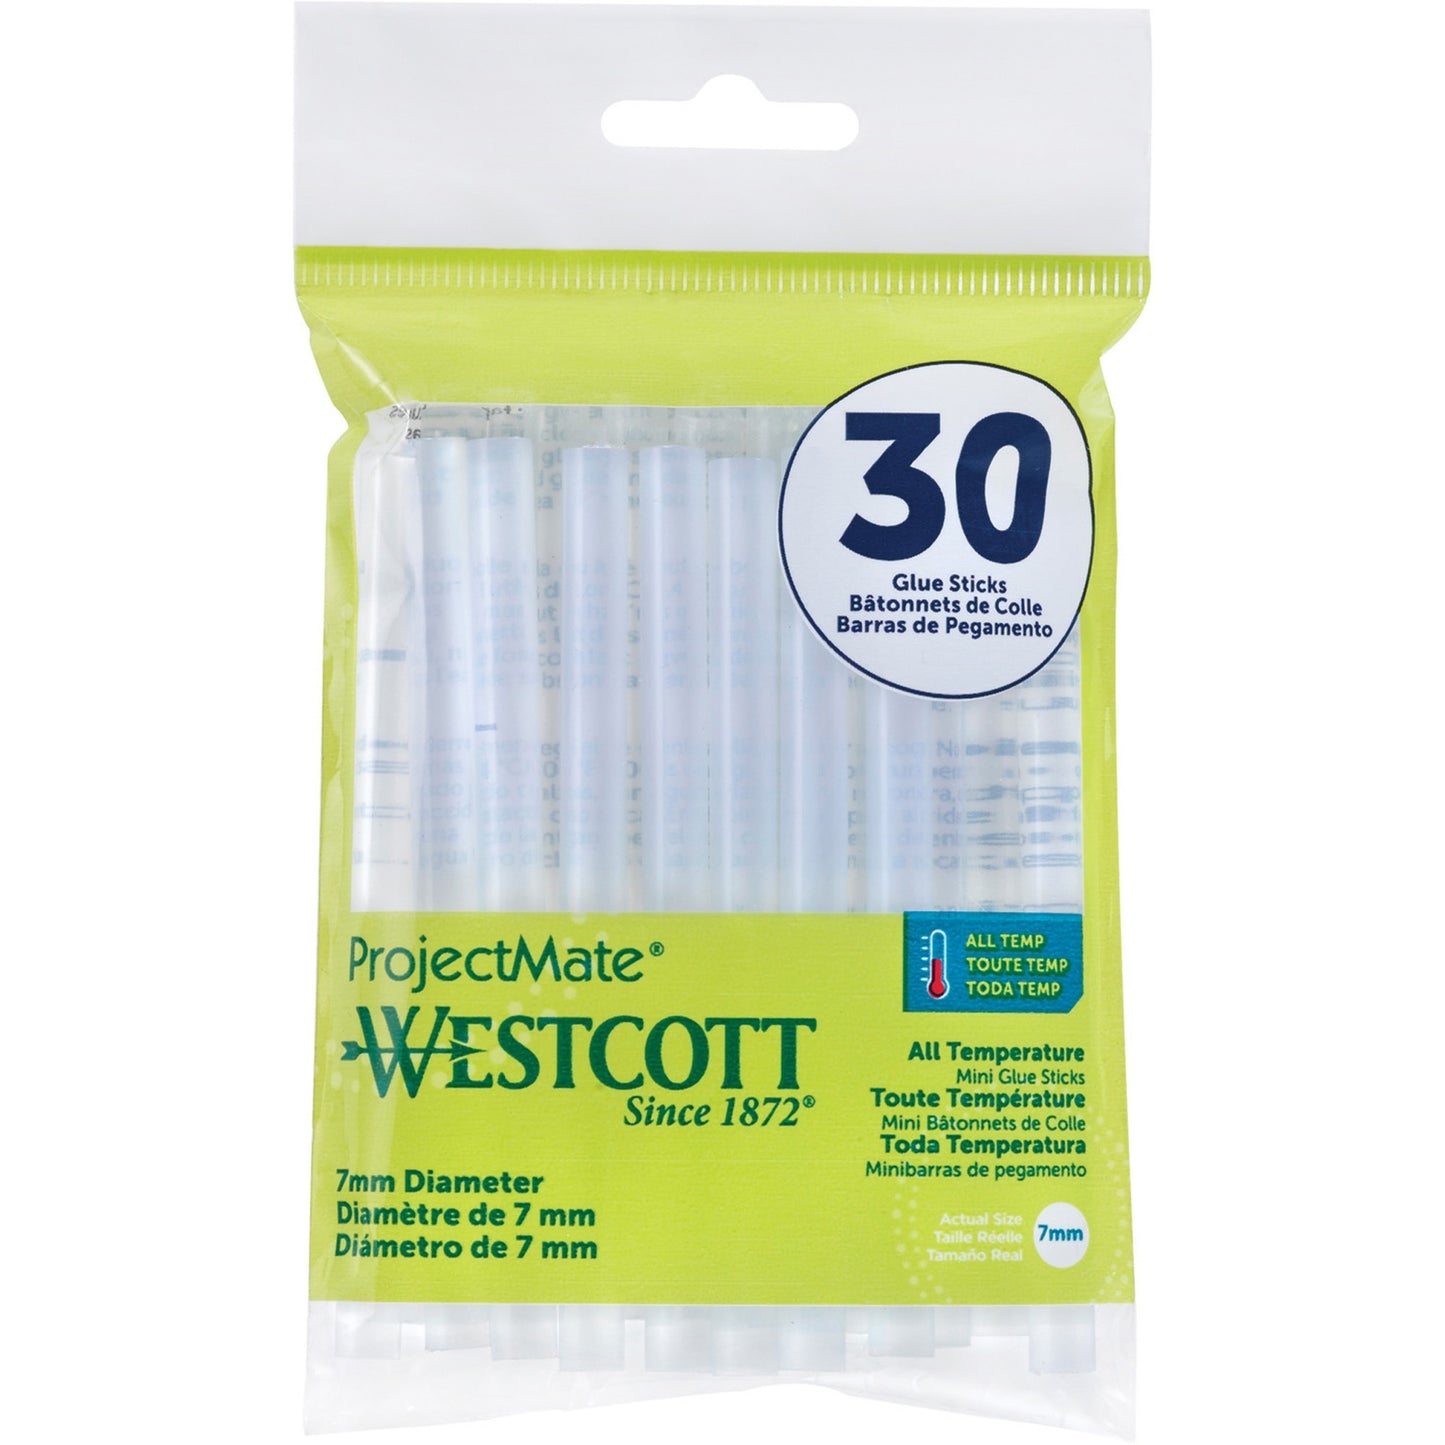 Westcott All Temperature Mini Glue Sticks